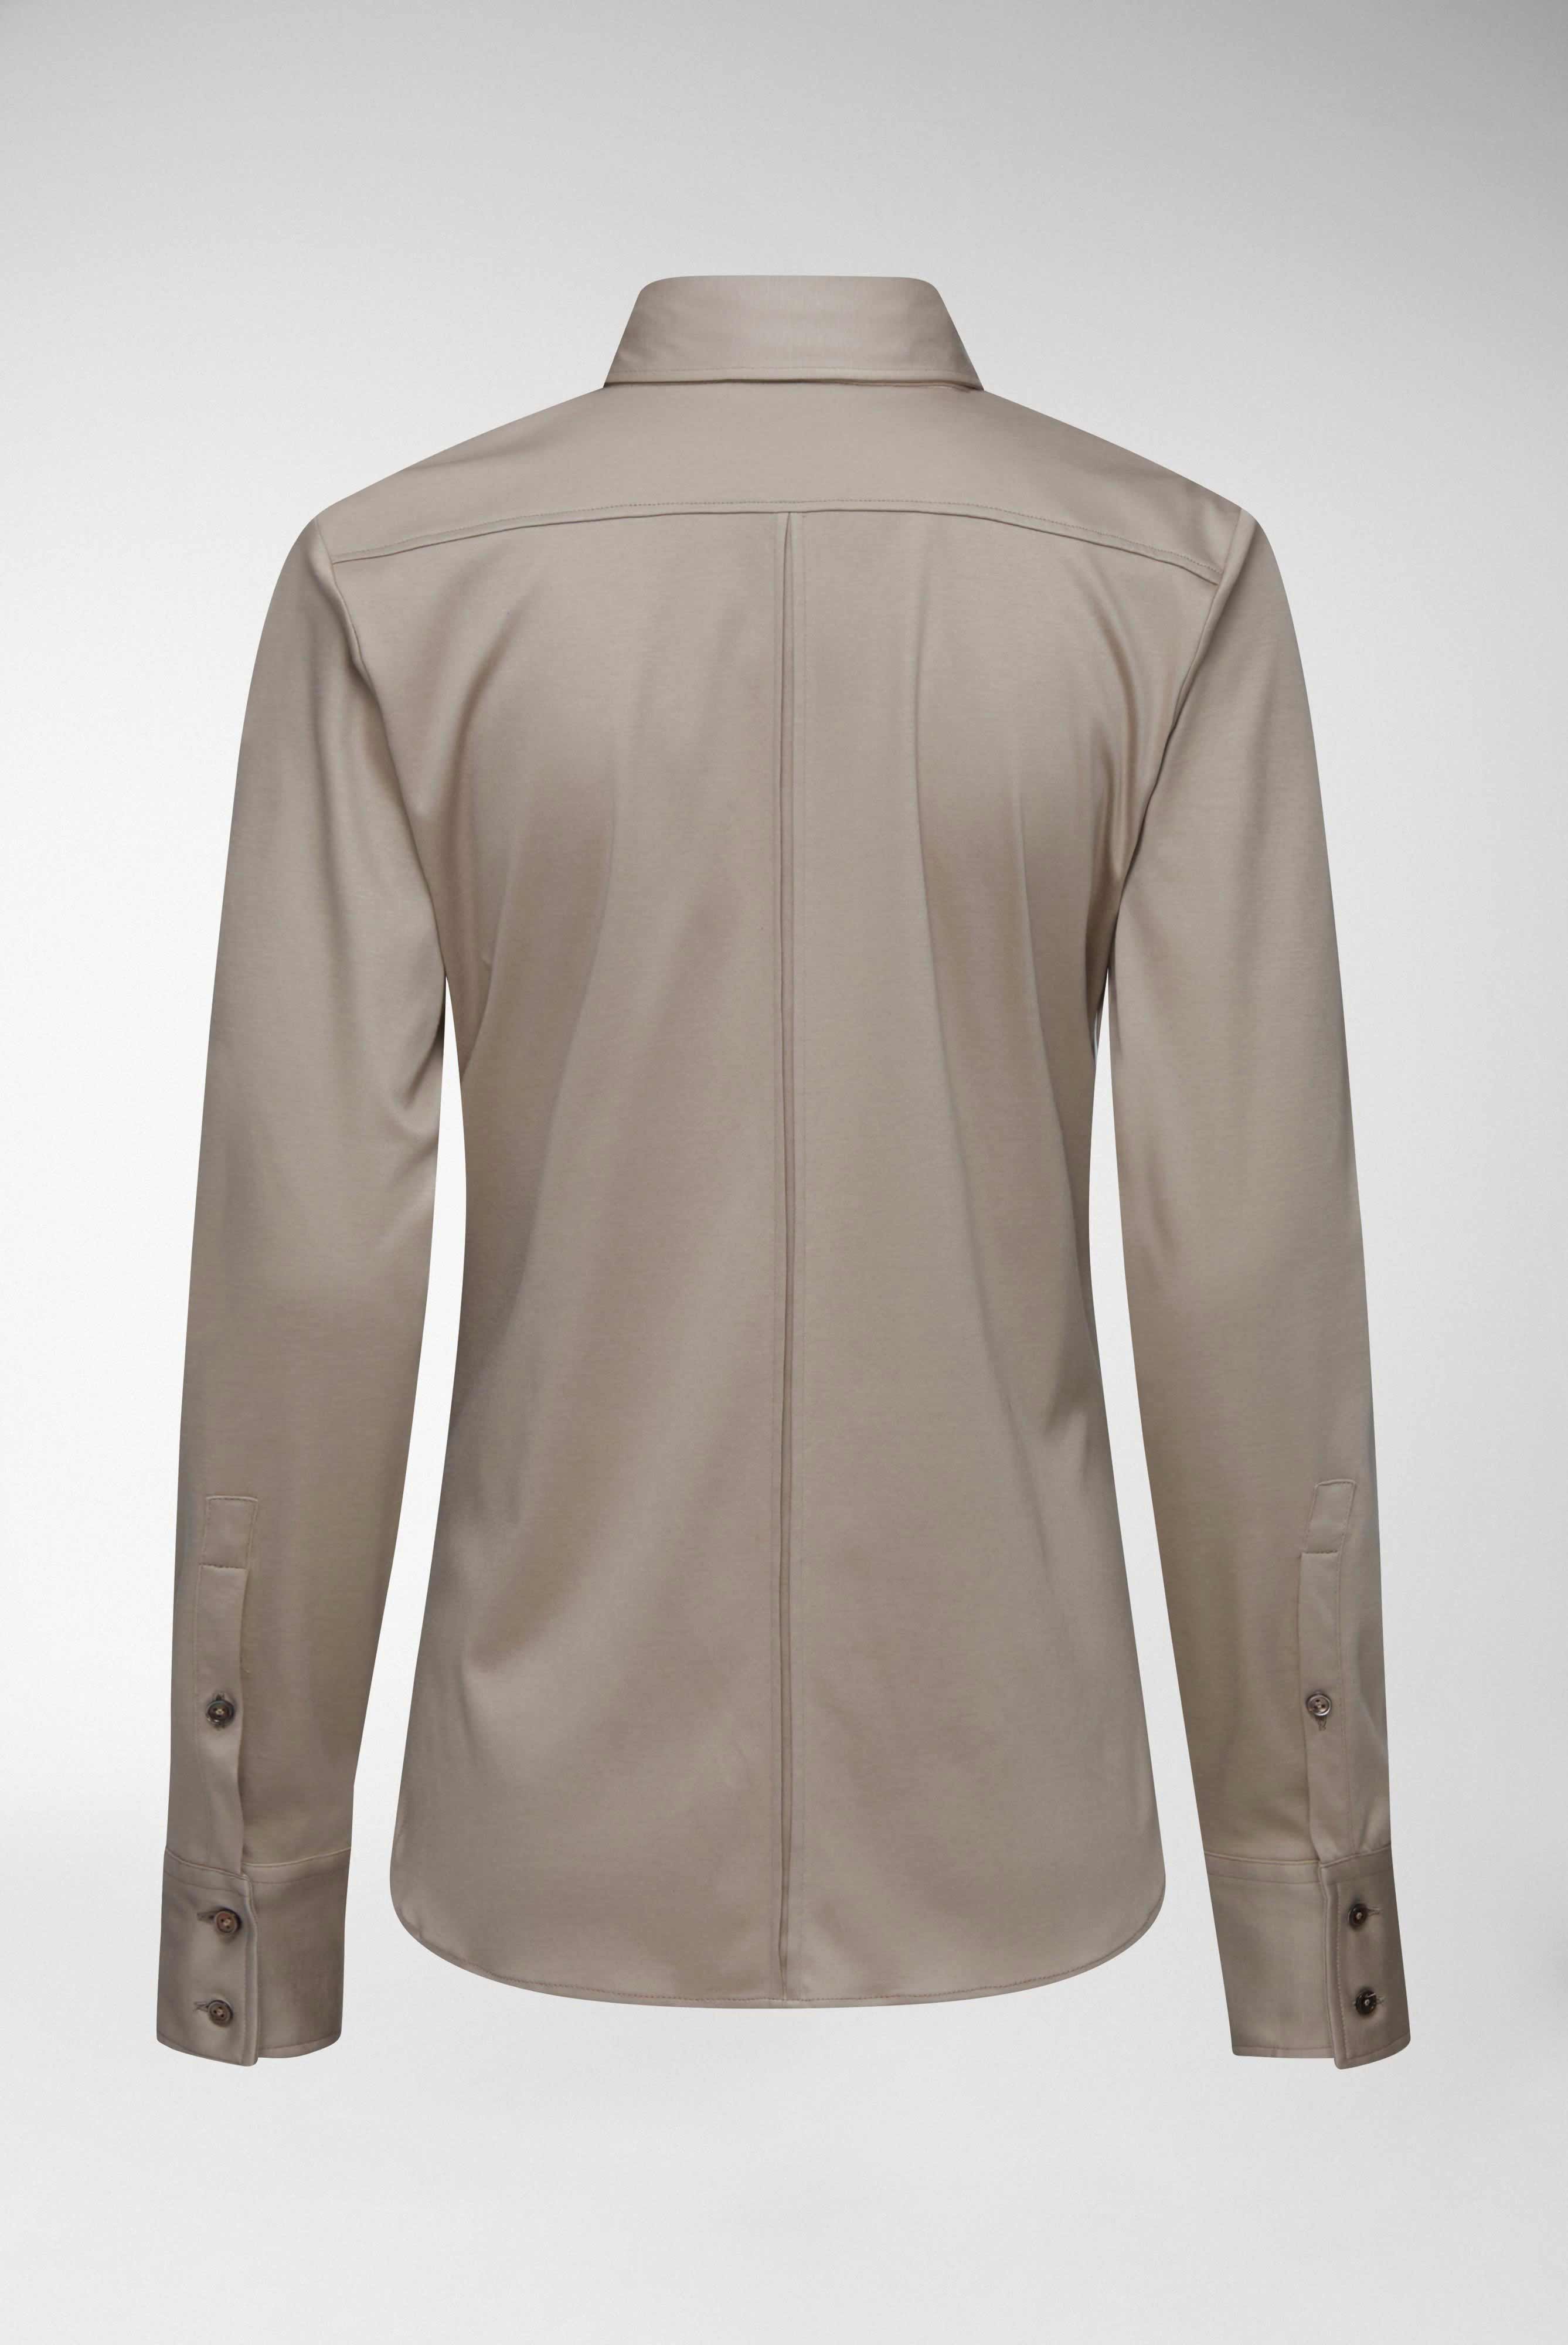 Casual Blusen+Taillierte Jersey Hemdbluse aus Schweizer Baumwolle+05.603Y..180031.140.32